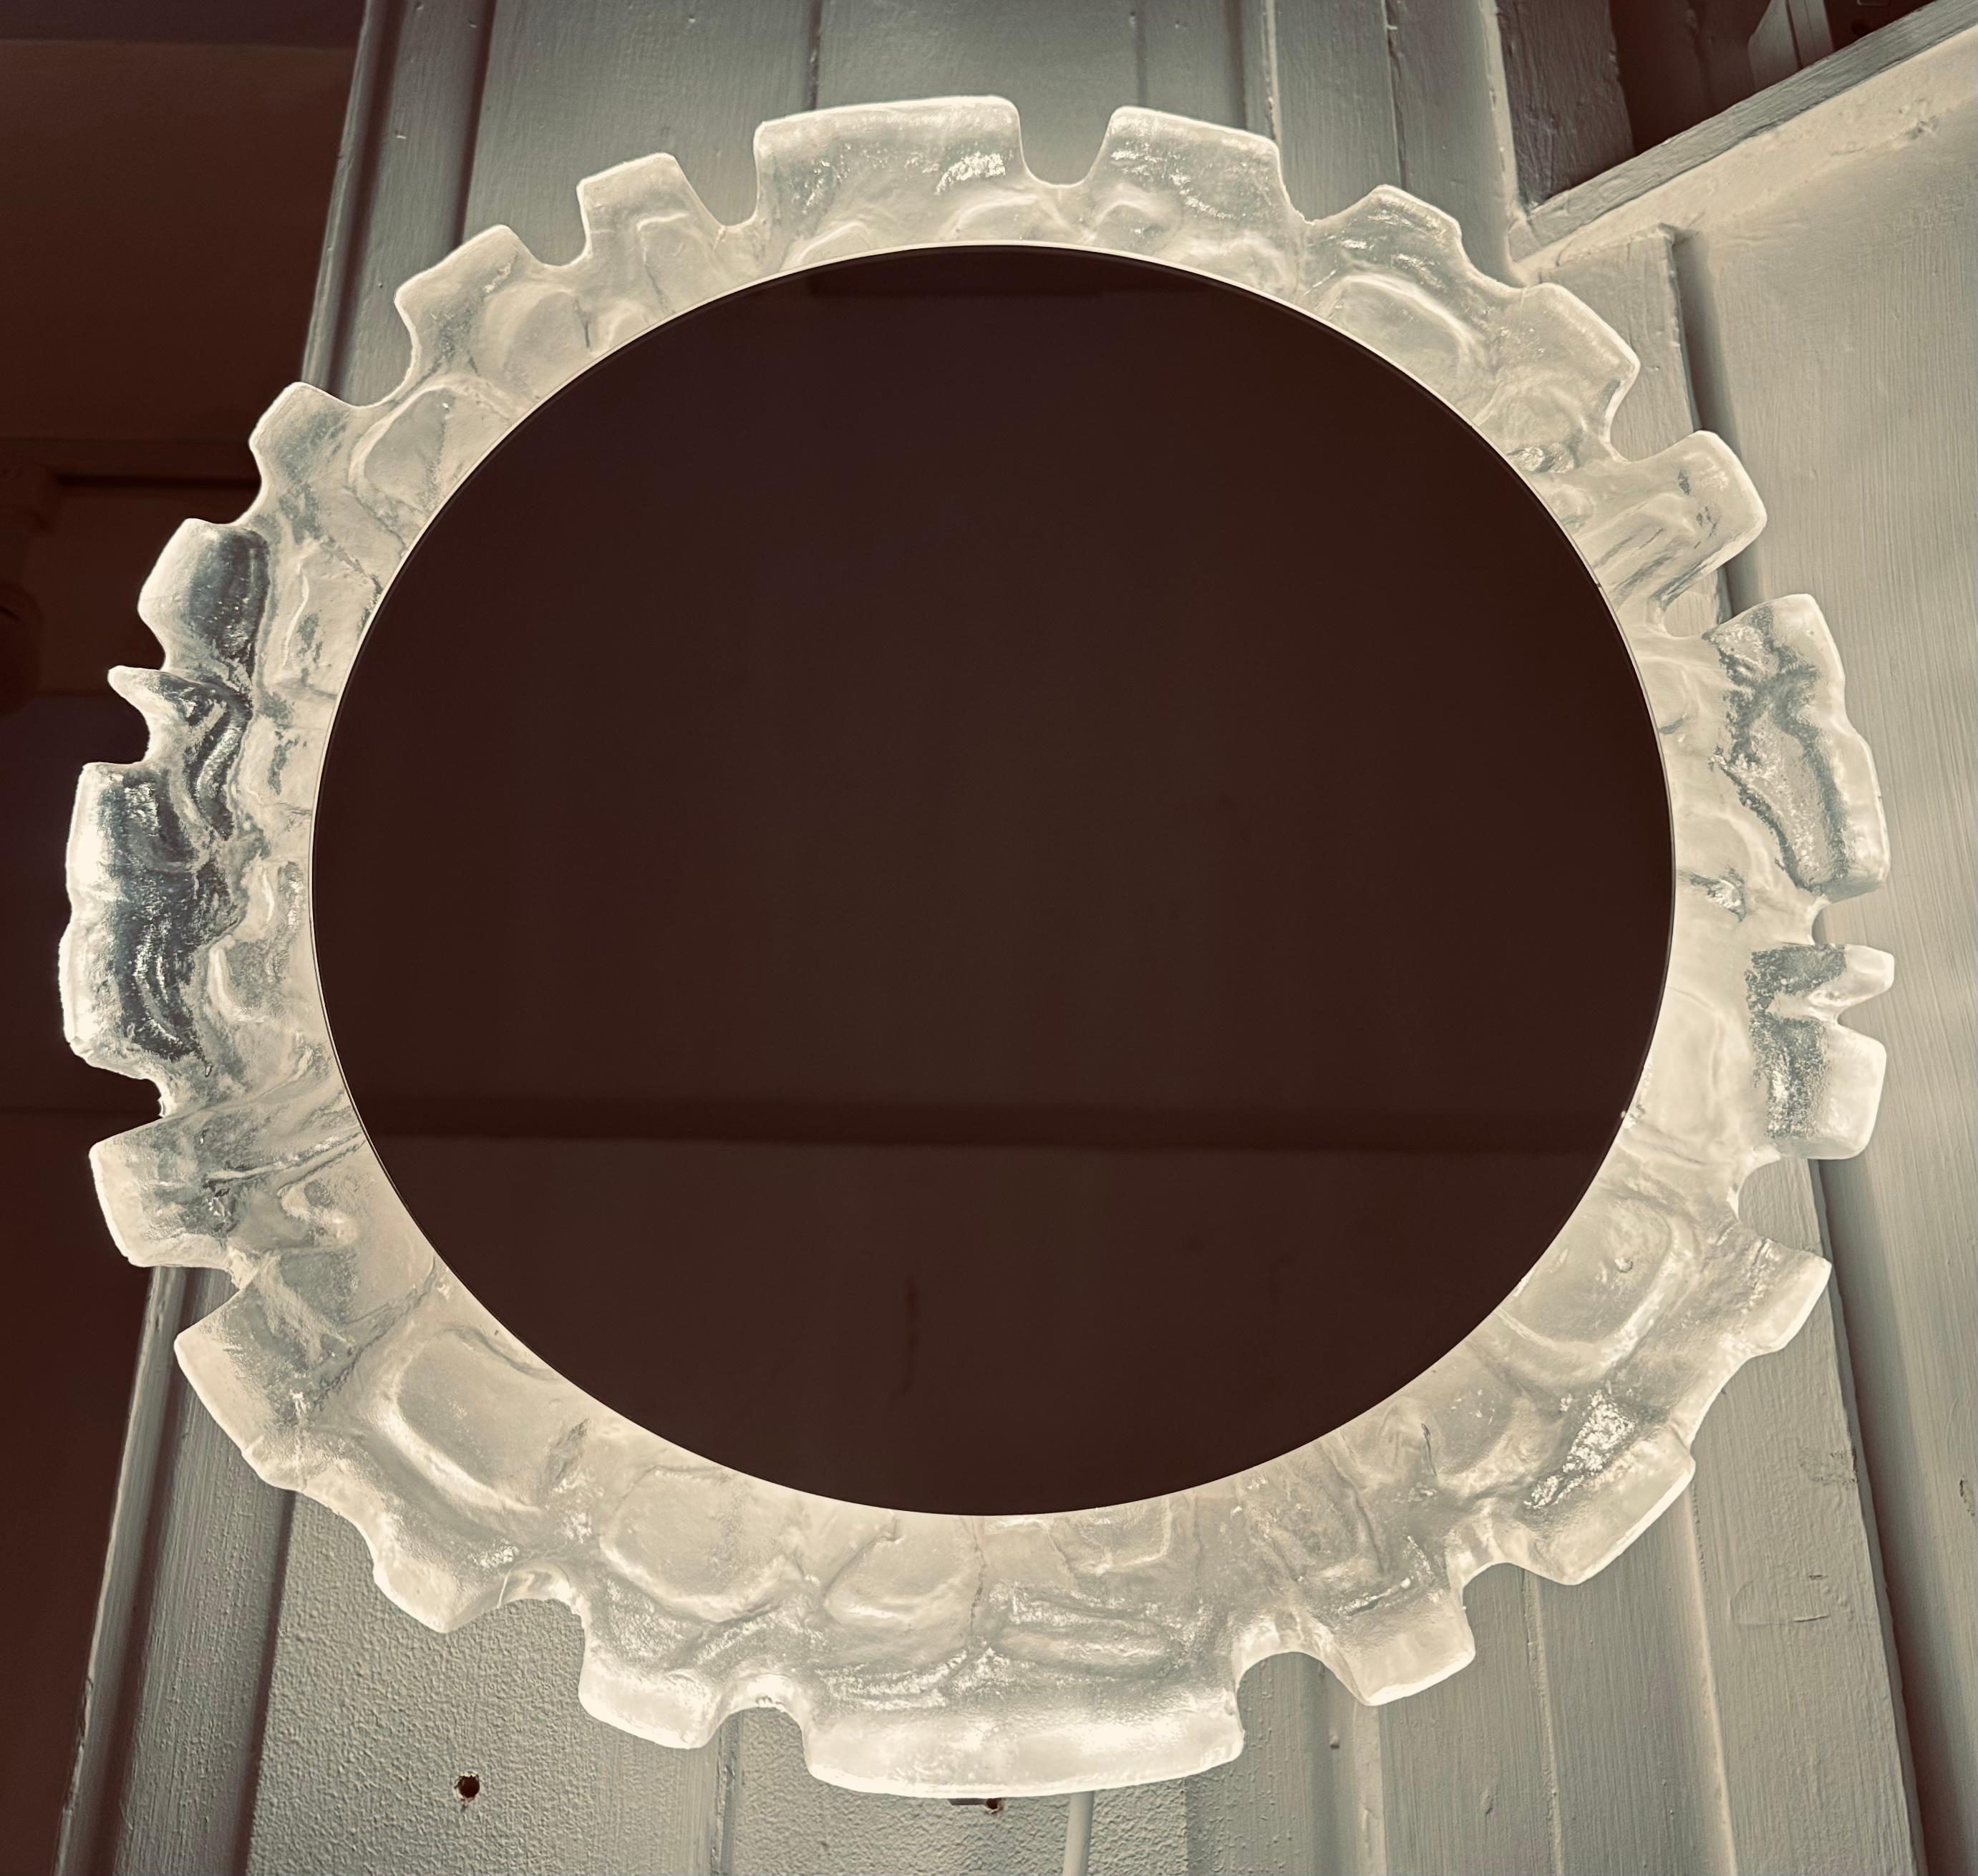 1960s Vintage By German illuminated lucite mirrored glass wall mirror manufactured by Erco.  Le miroir rond est suspendu dans un cadre abstrait en lucite moulé, sculpté et texturé, qui est rétroéclairé.  

Quatre ampoules à vis E14 Edison sont